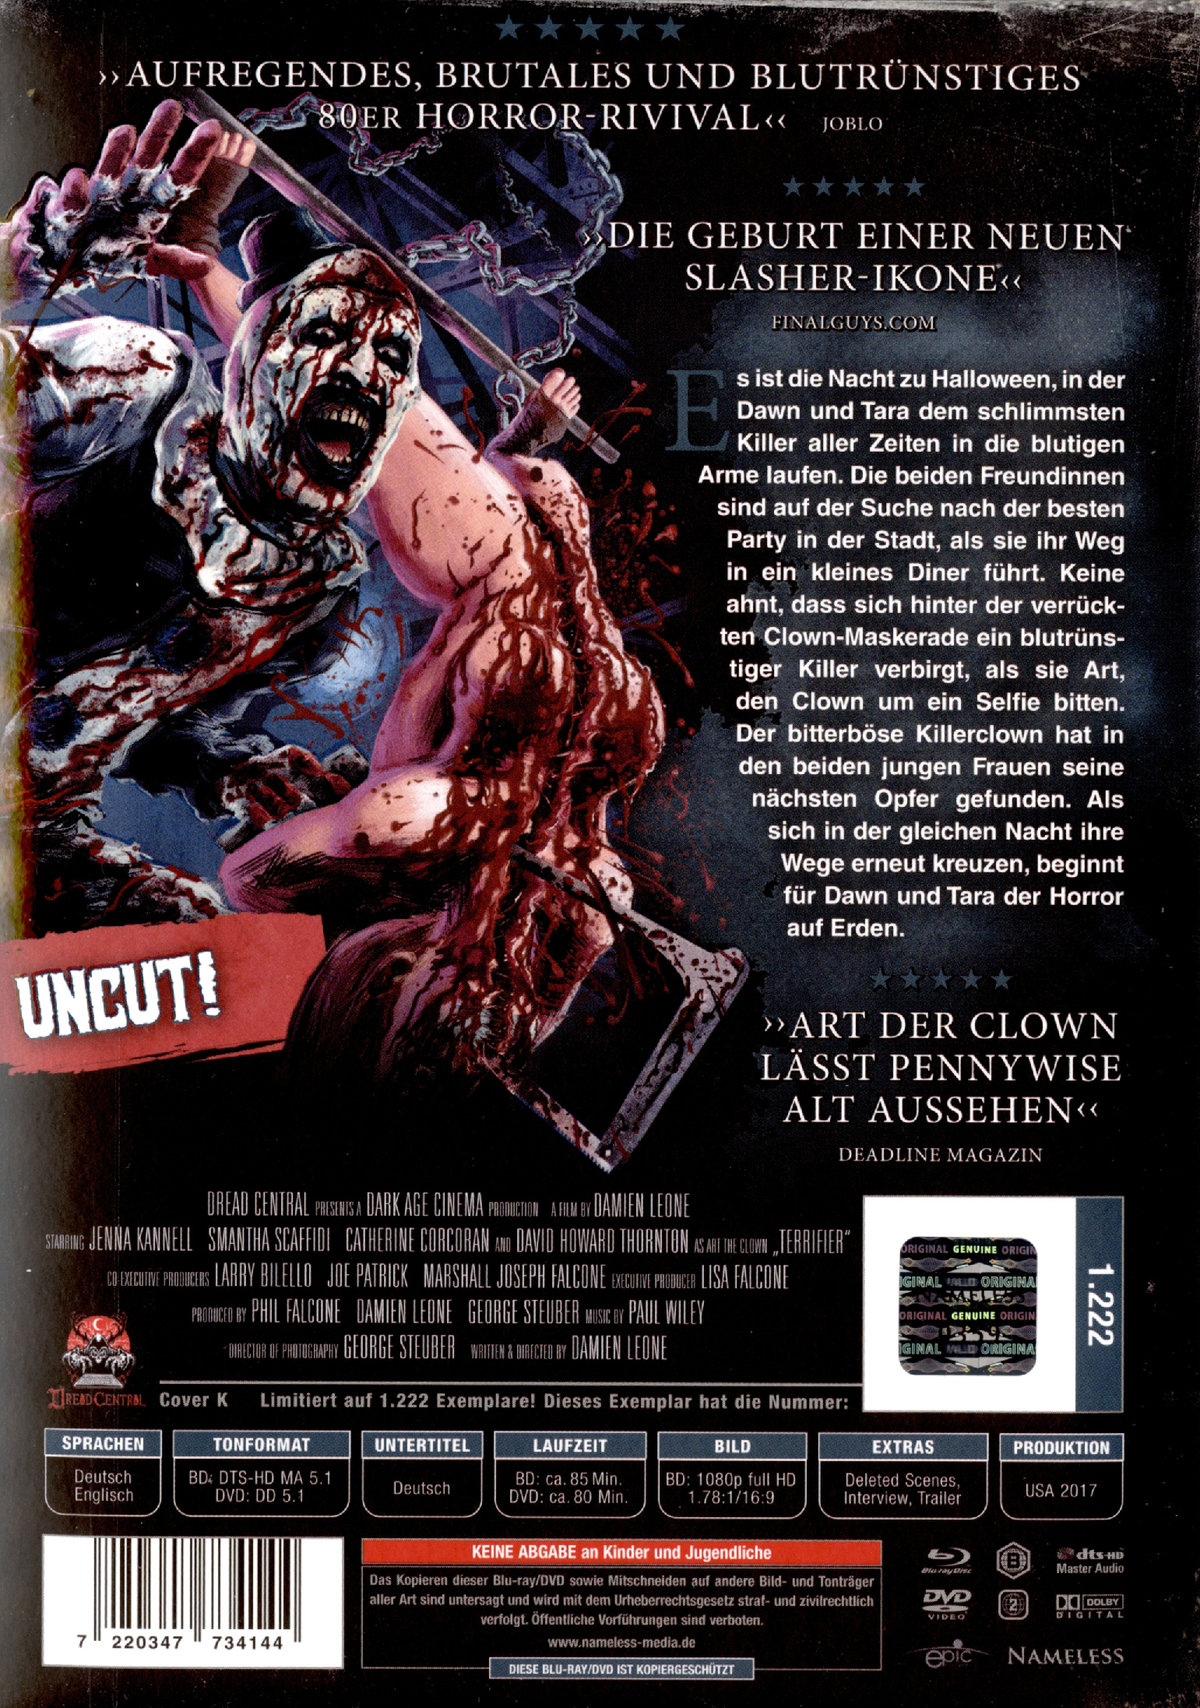 Terrifier - Uncut Mediabook Edition  (DVD+blu-ray) (K)